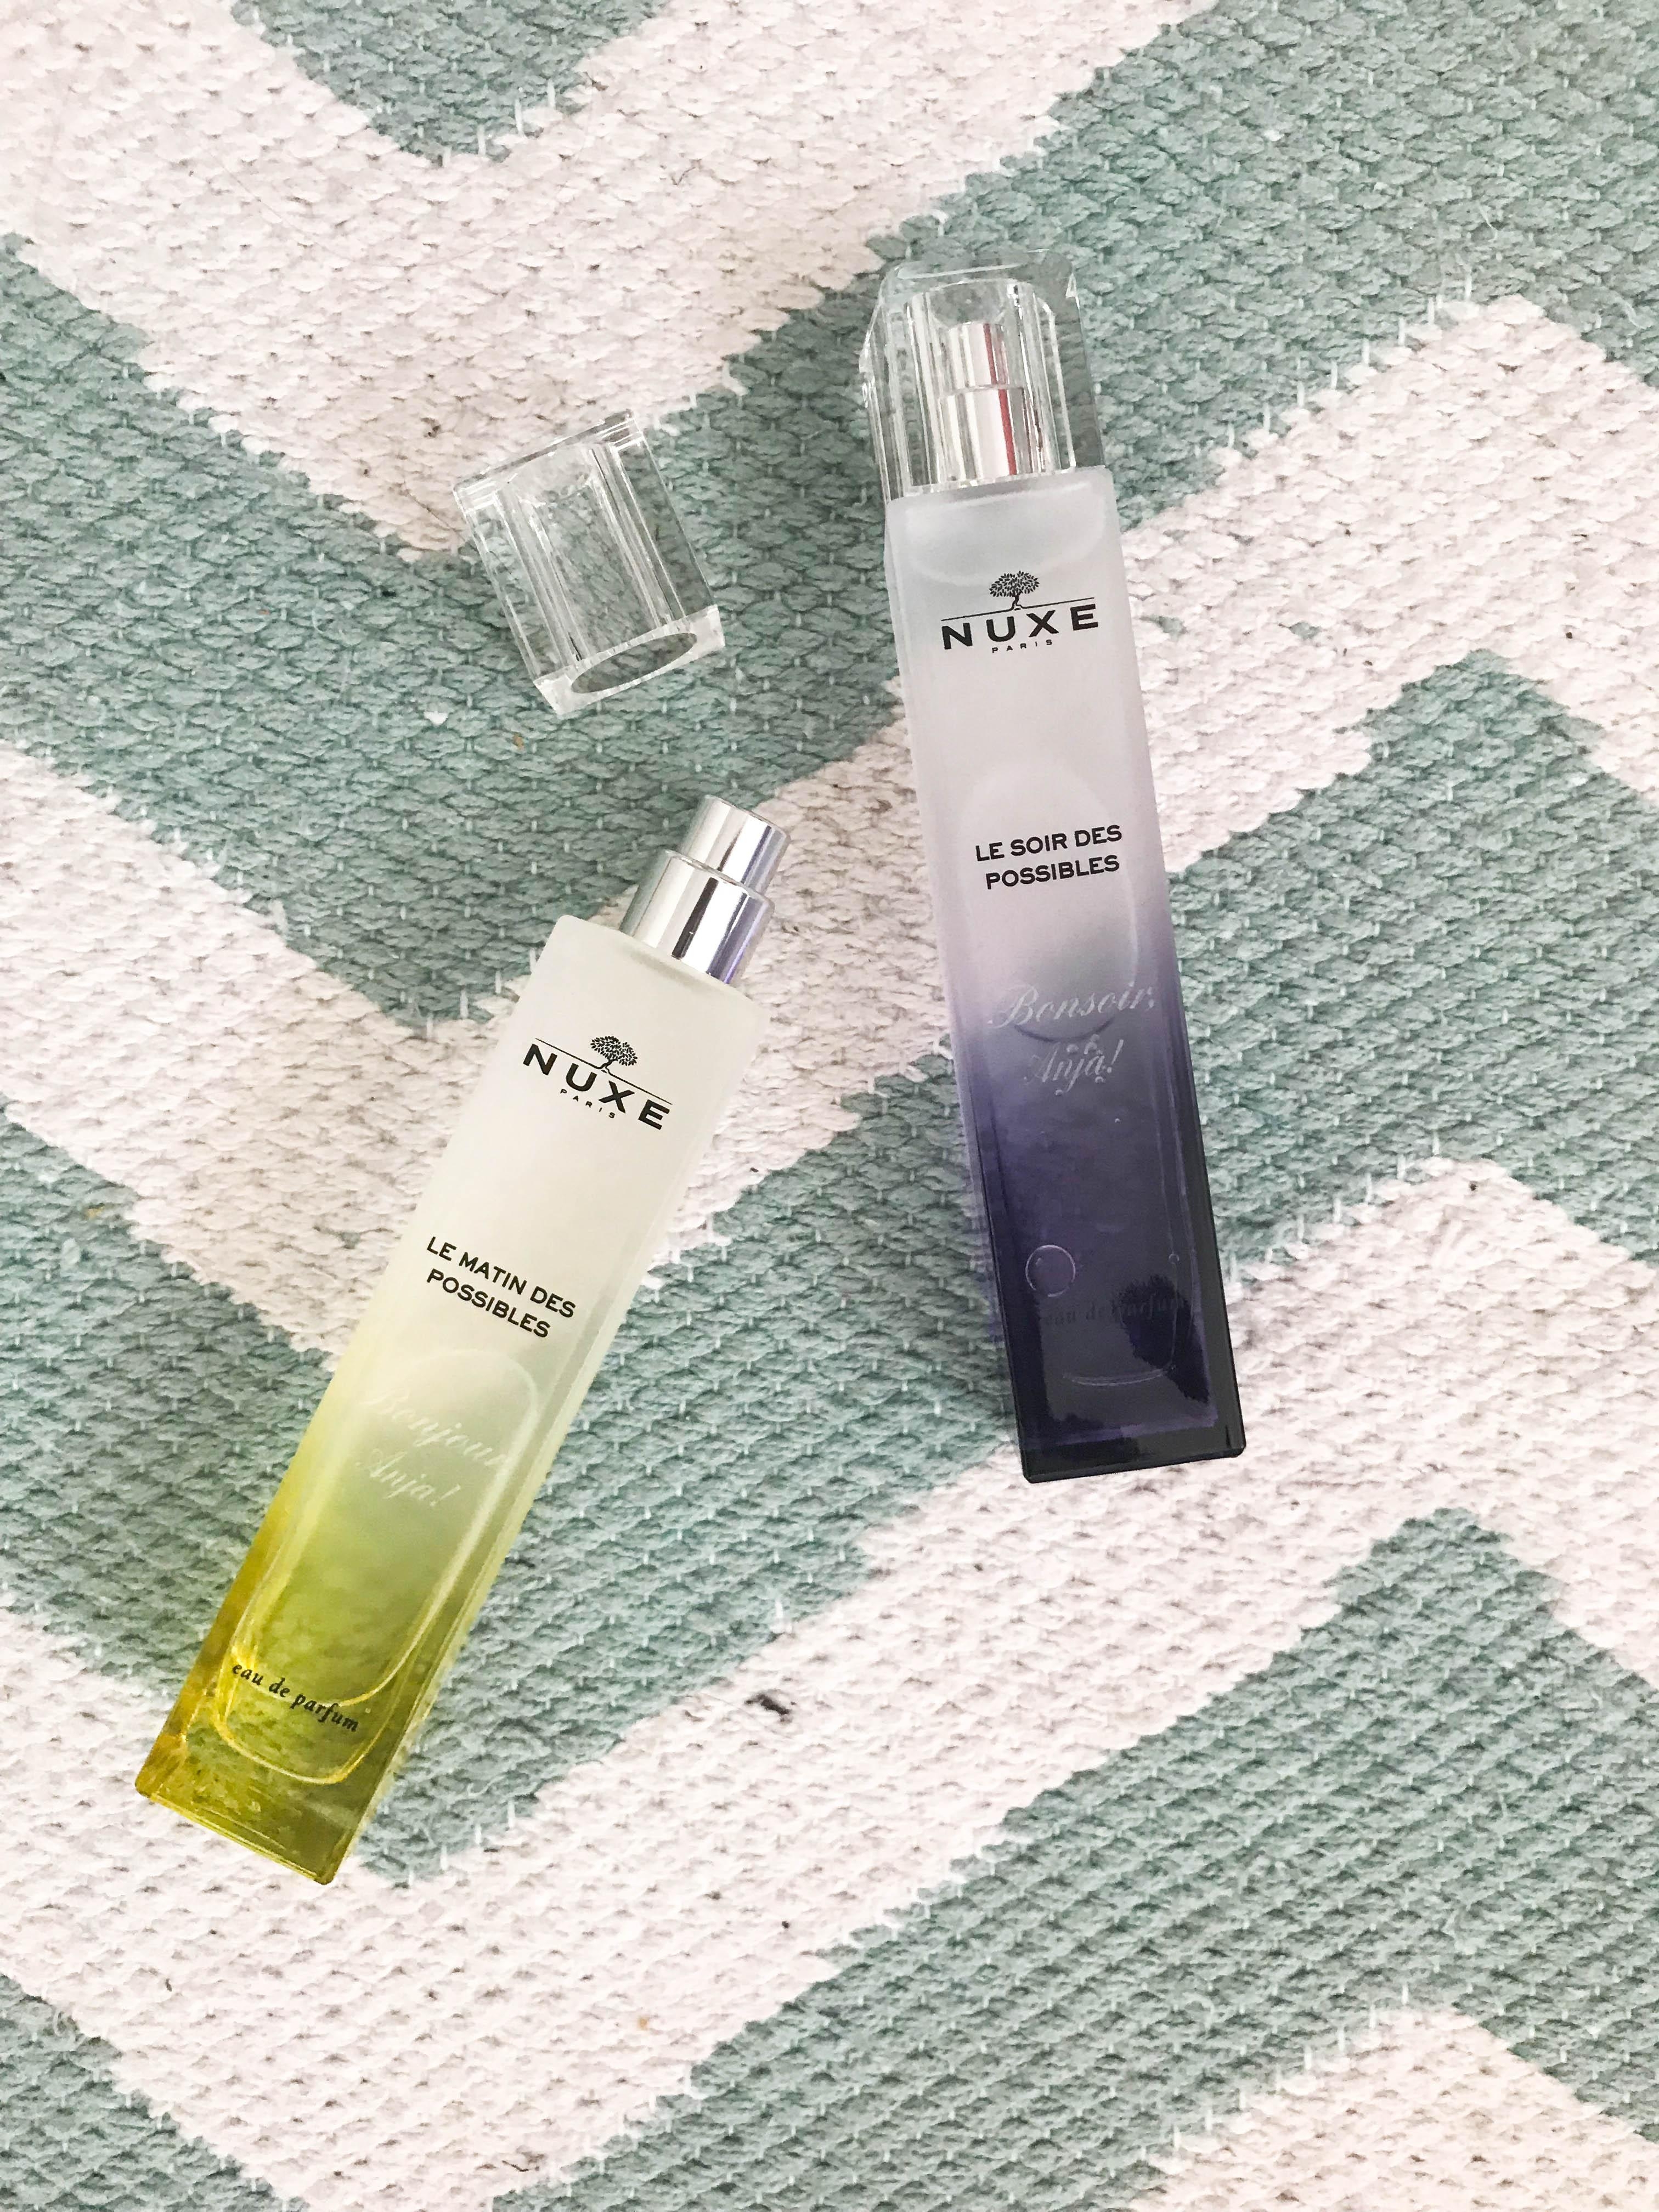 Nuxe launcht Mitte August zwei neue Parfums, die den Duft des Sommers für uns bewahren #beautylieblinge #parfum #nuxe